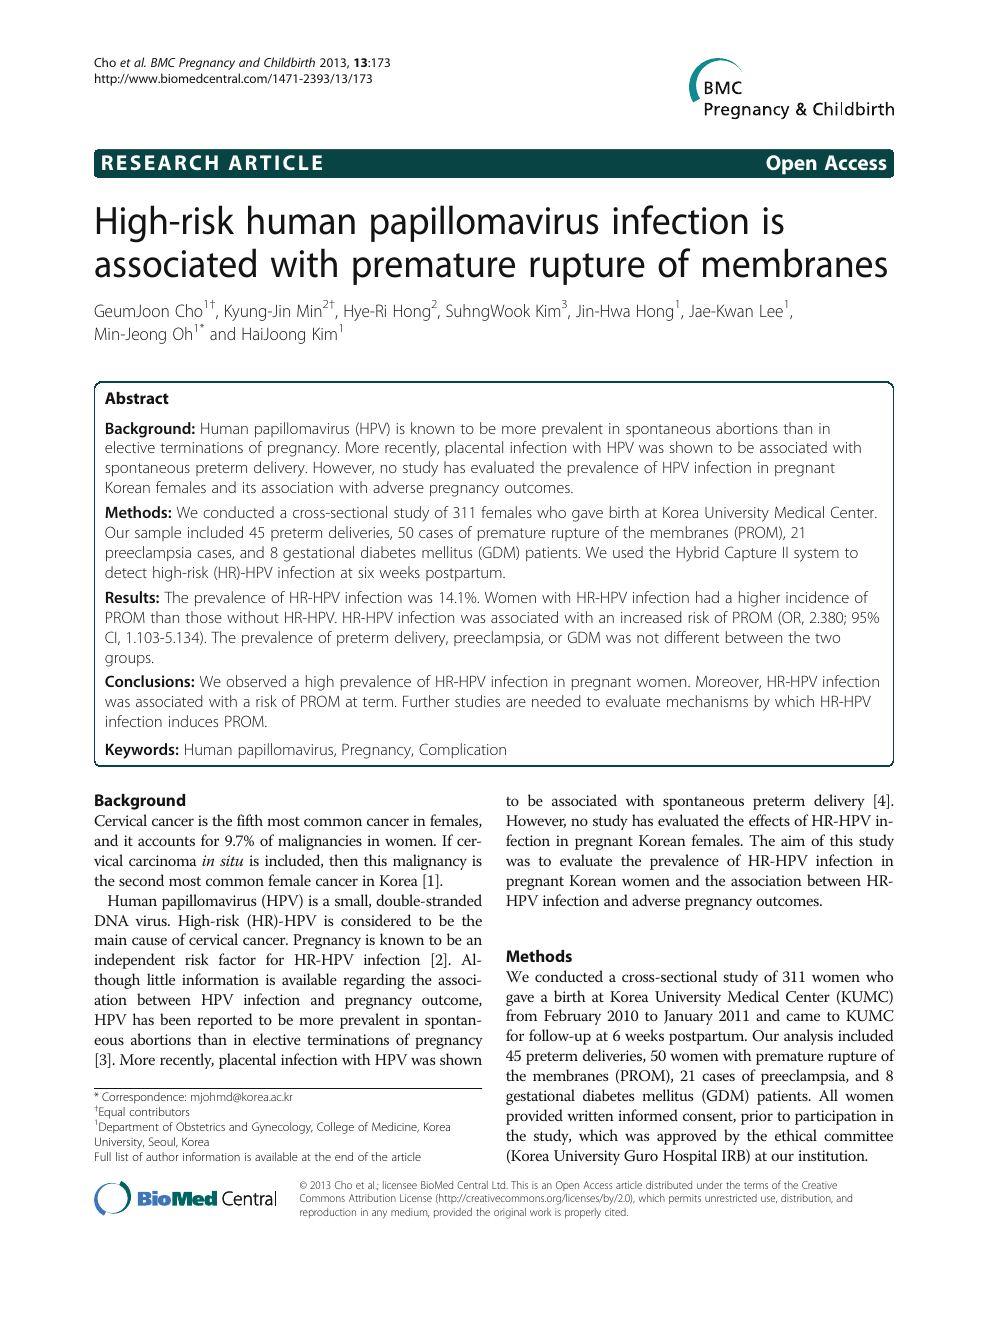 human papillomavirus infection when pregnant papillomatosis biliary